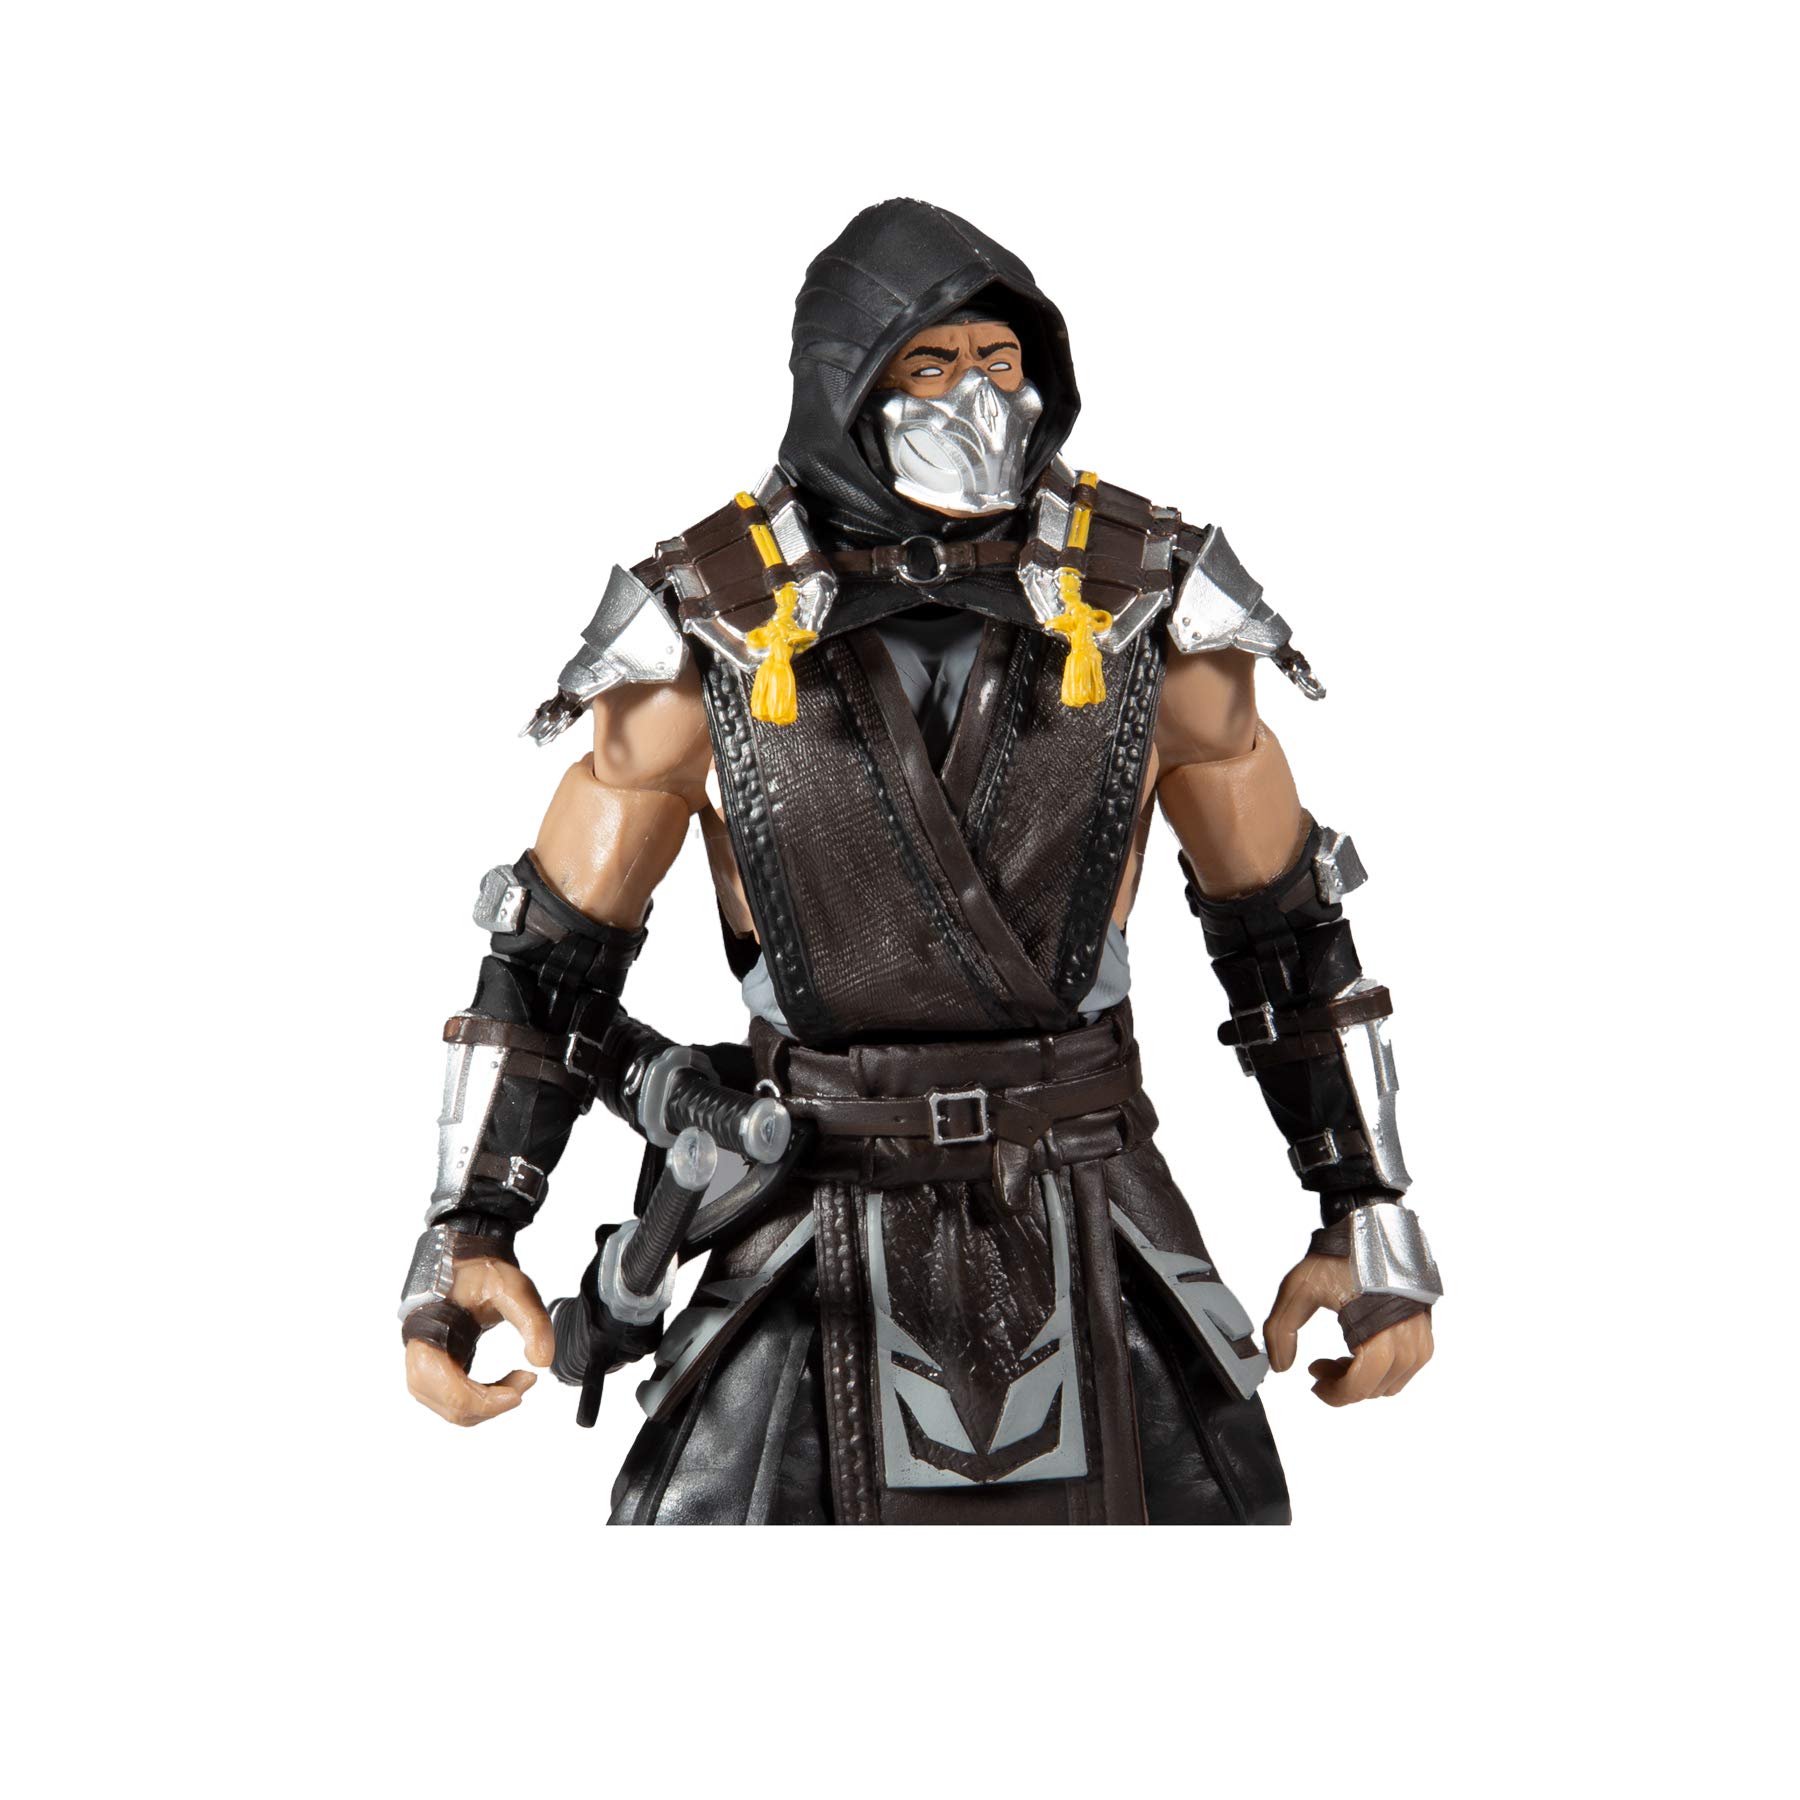 Đấu sĩ Mortal Kombat X xuất hiện tại hội chợ đồ chơi